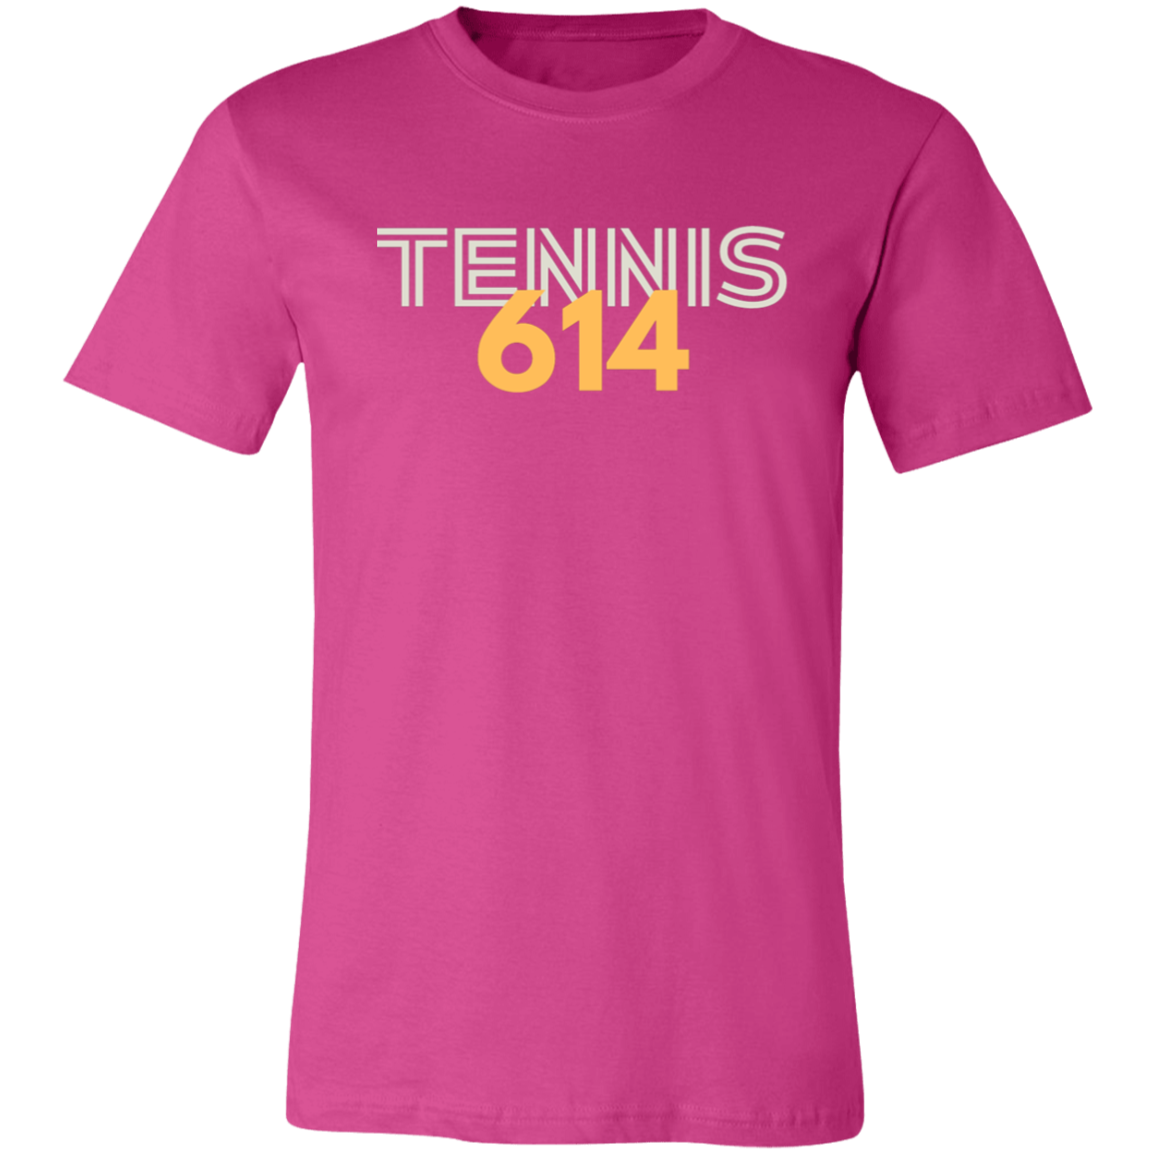 614 Tennis Unisex Jersey Tee